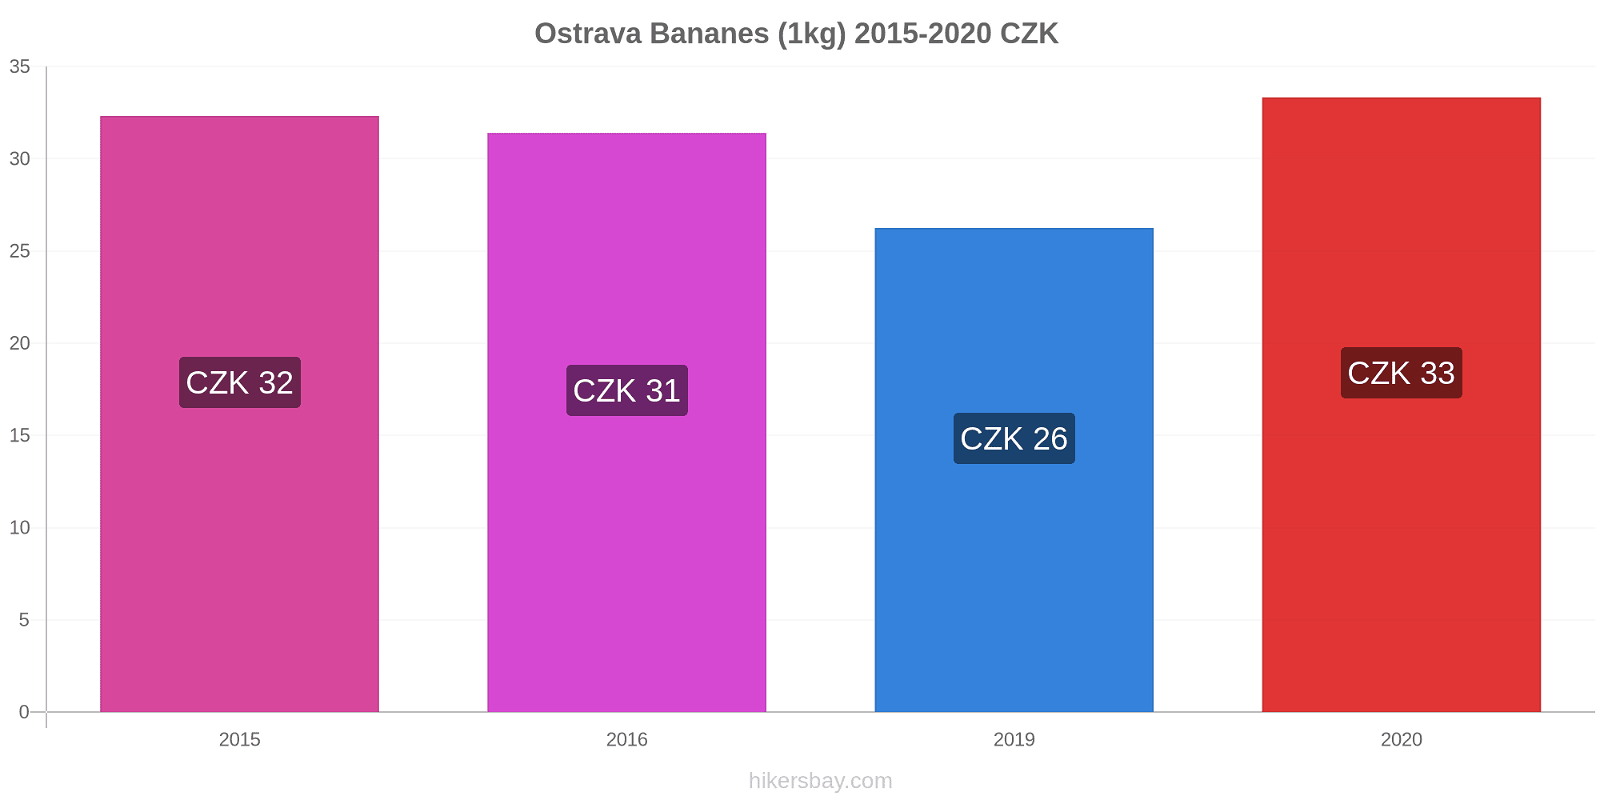 Ostrava changements de prix Bananes (1kg) hikersbay.com